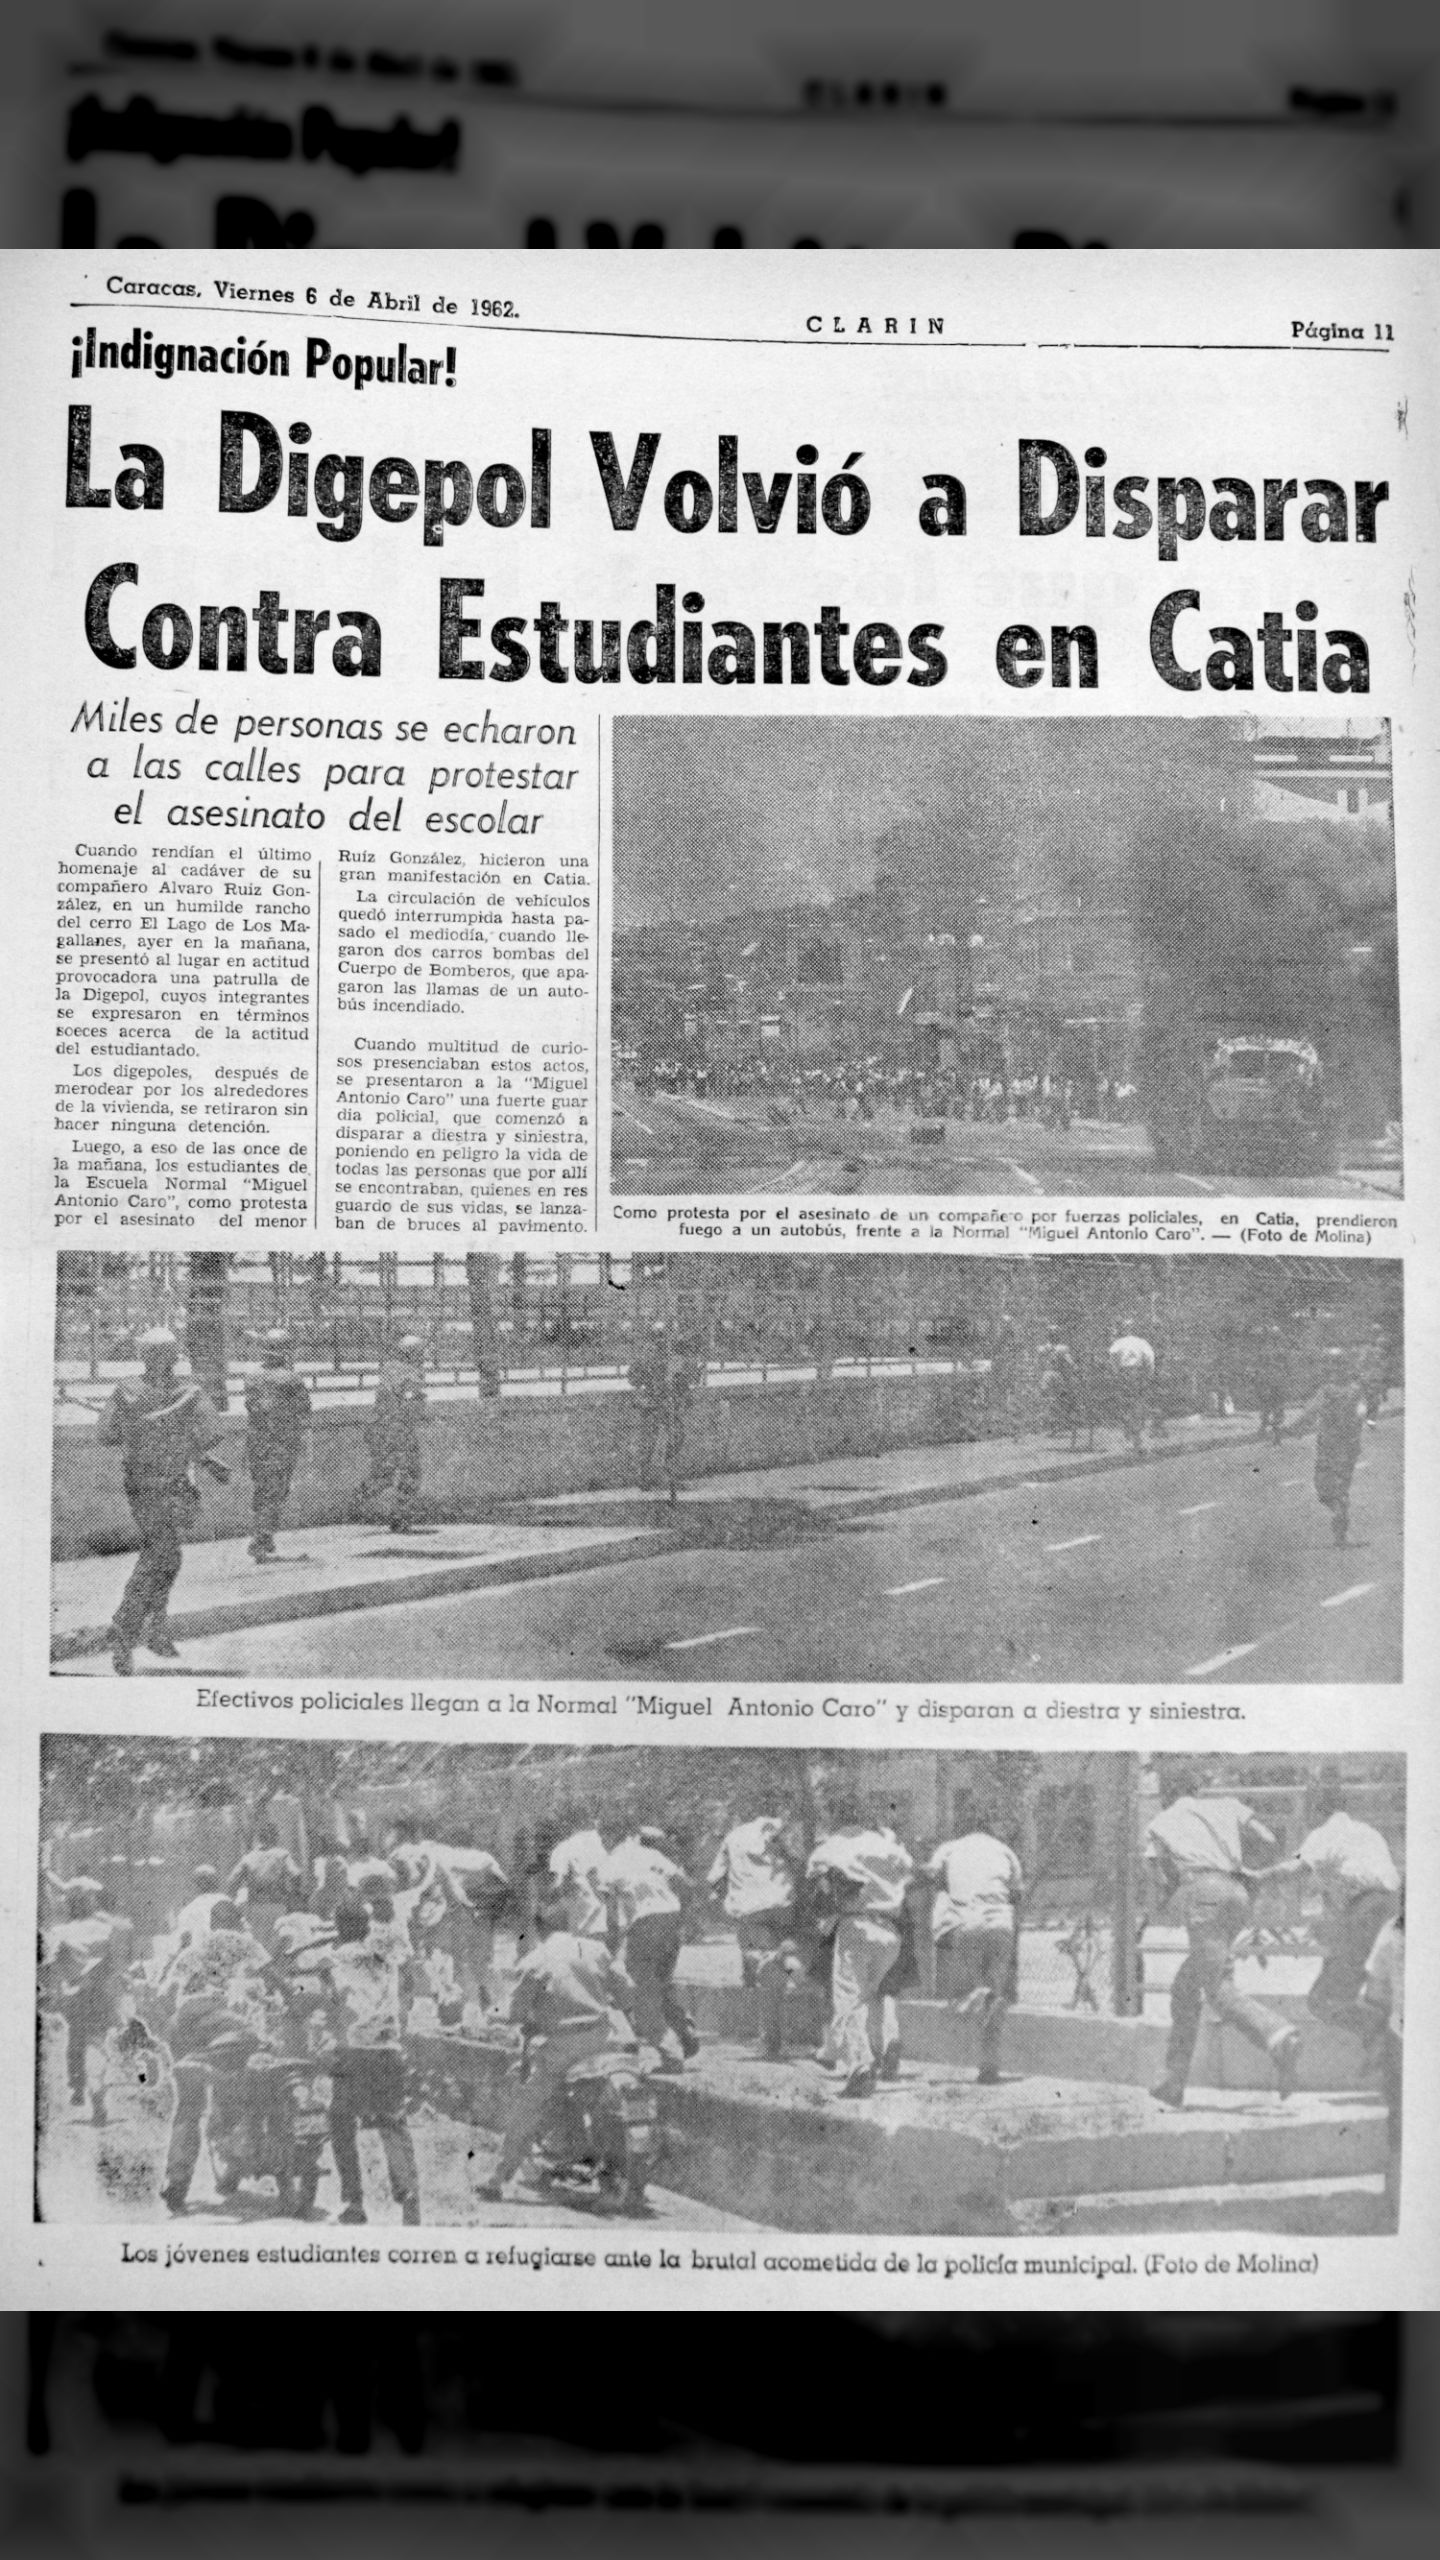 La Digepol volvió a disparar contra estudiantes en Catia (Clarín, 6 de abril de 1962)